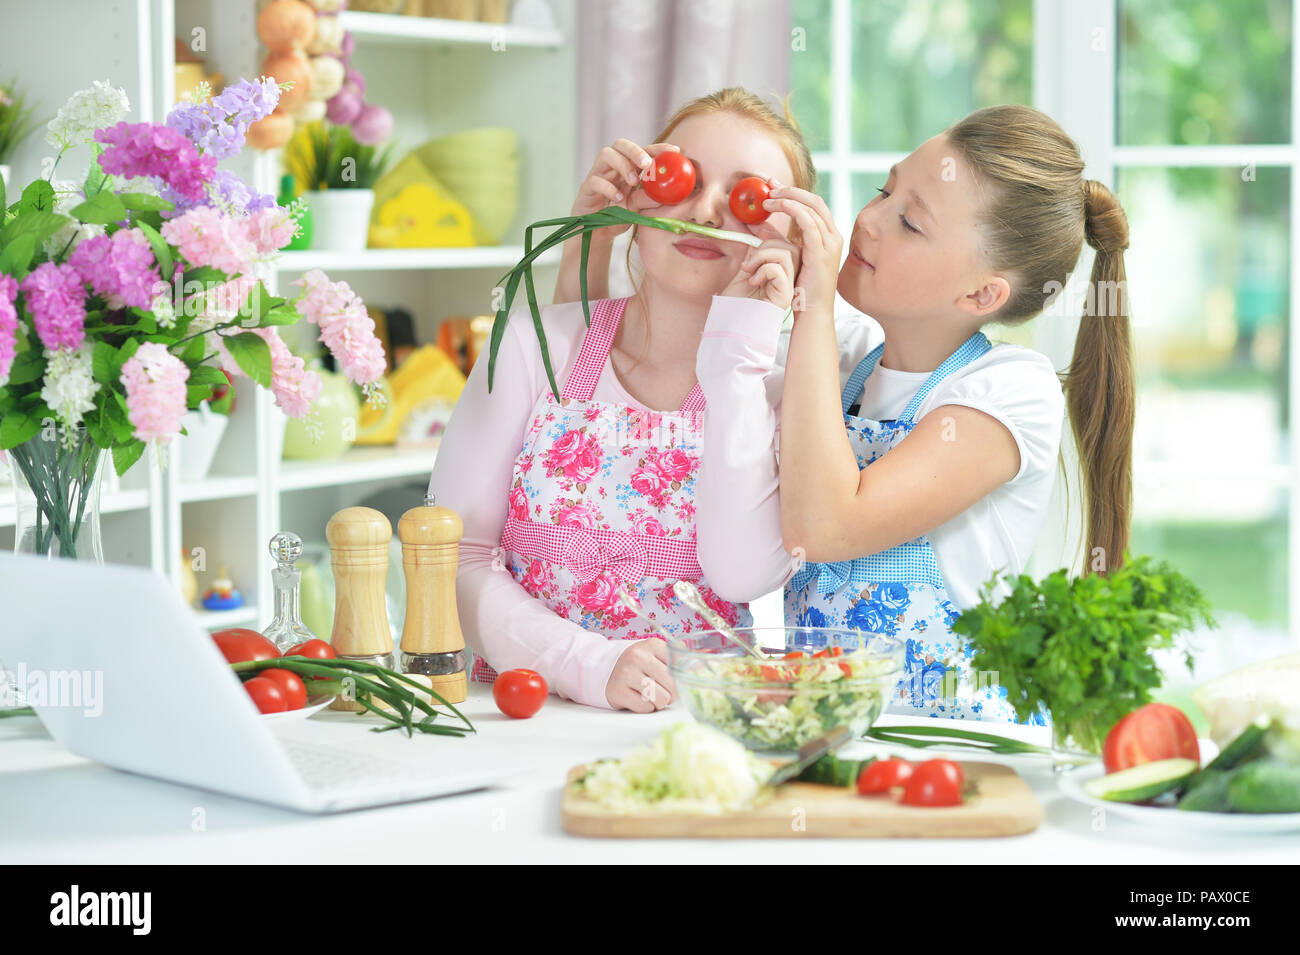 Deux funny girls préparer une salade fraîche Banque D'Images